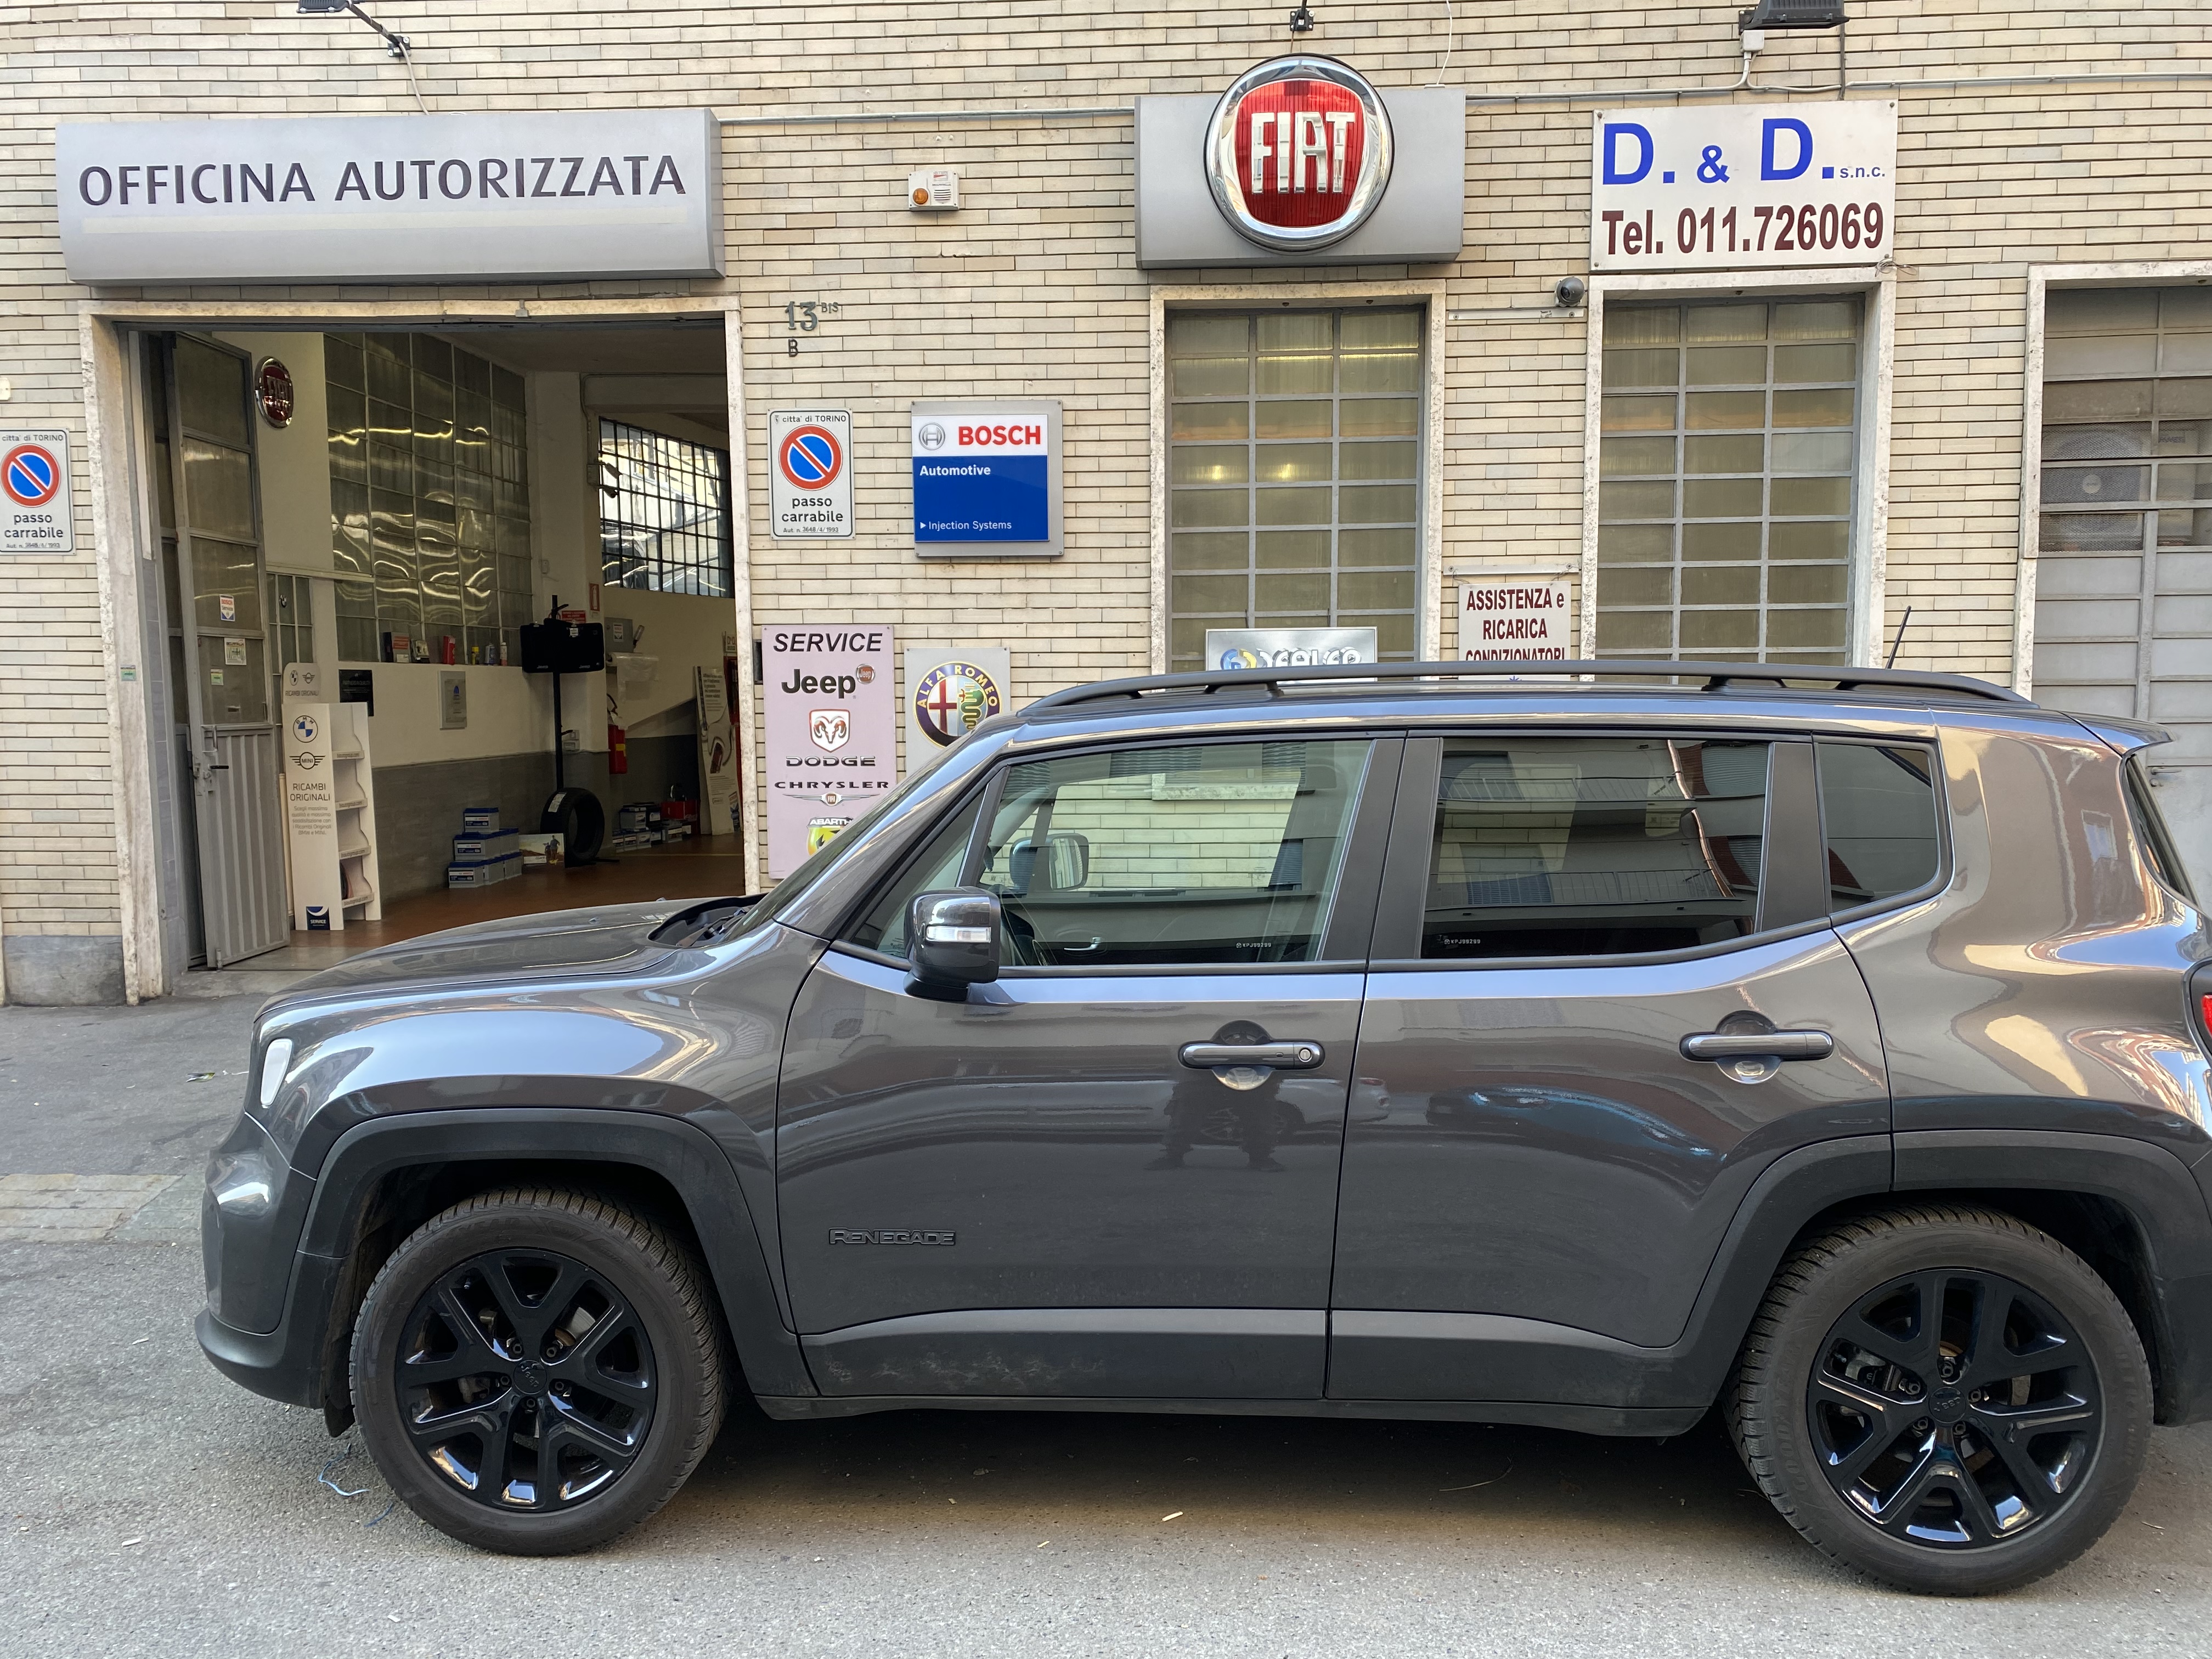 D.& D Auto Torino di D’ECCLESIIS officina autorizzata Fiat specializzata Jeep